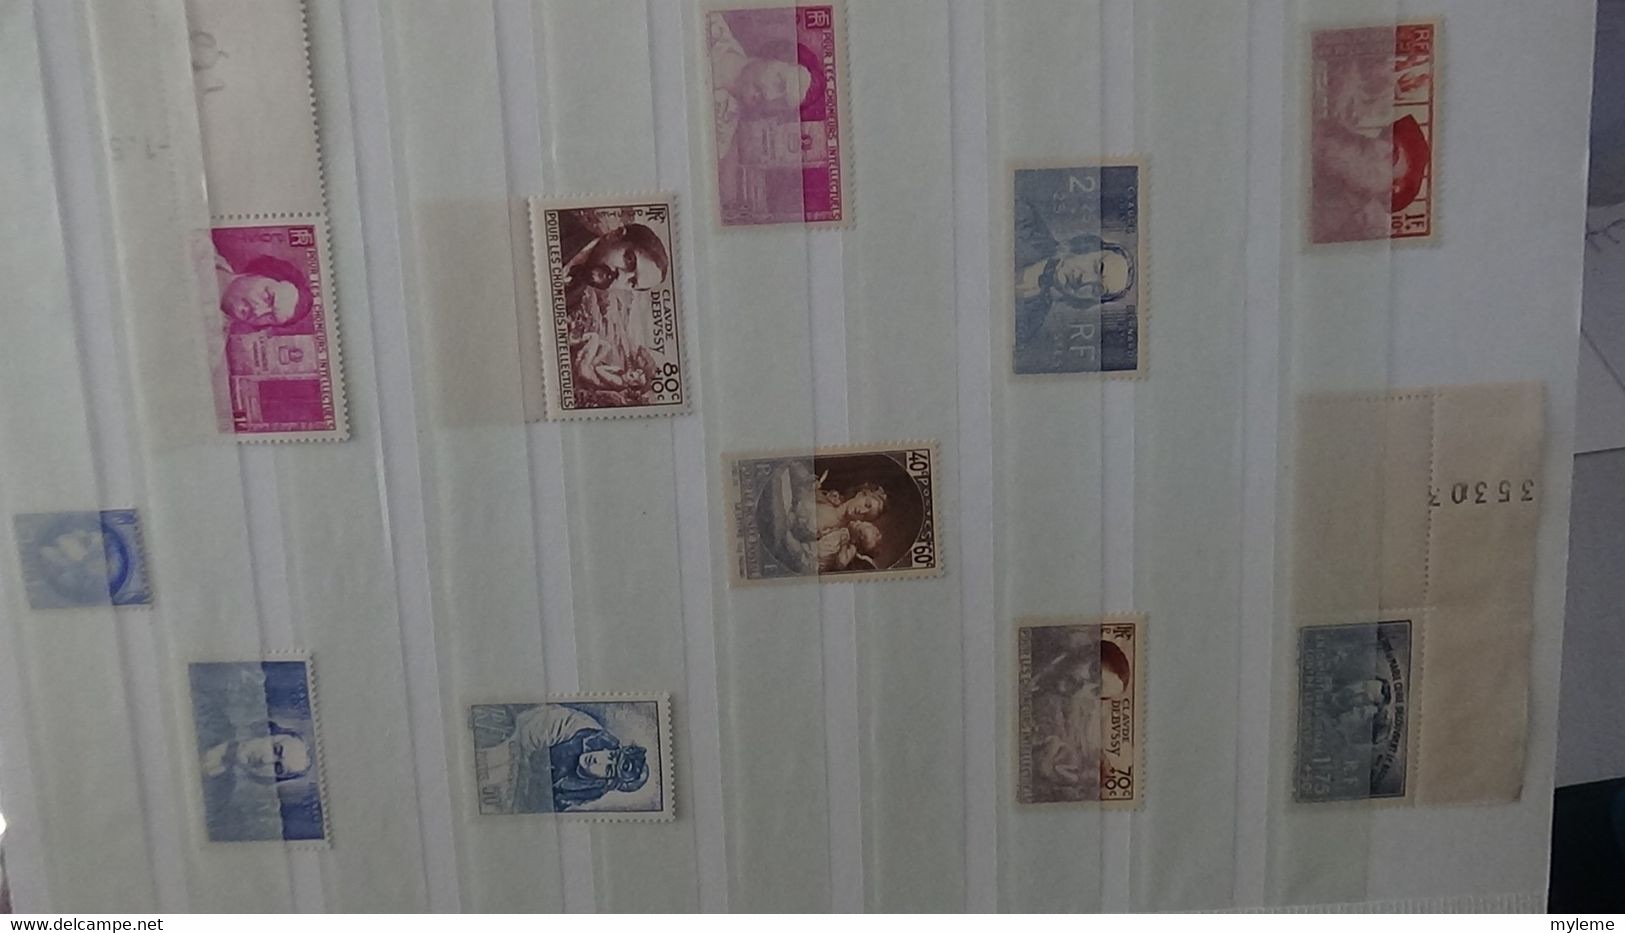 N267 Collection de timbres ** de France dont carnet croix rouge et bonnes petites valeurs. A saisir  !!